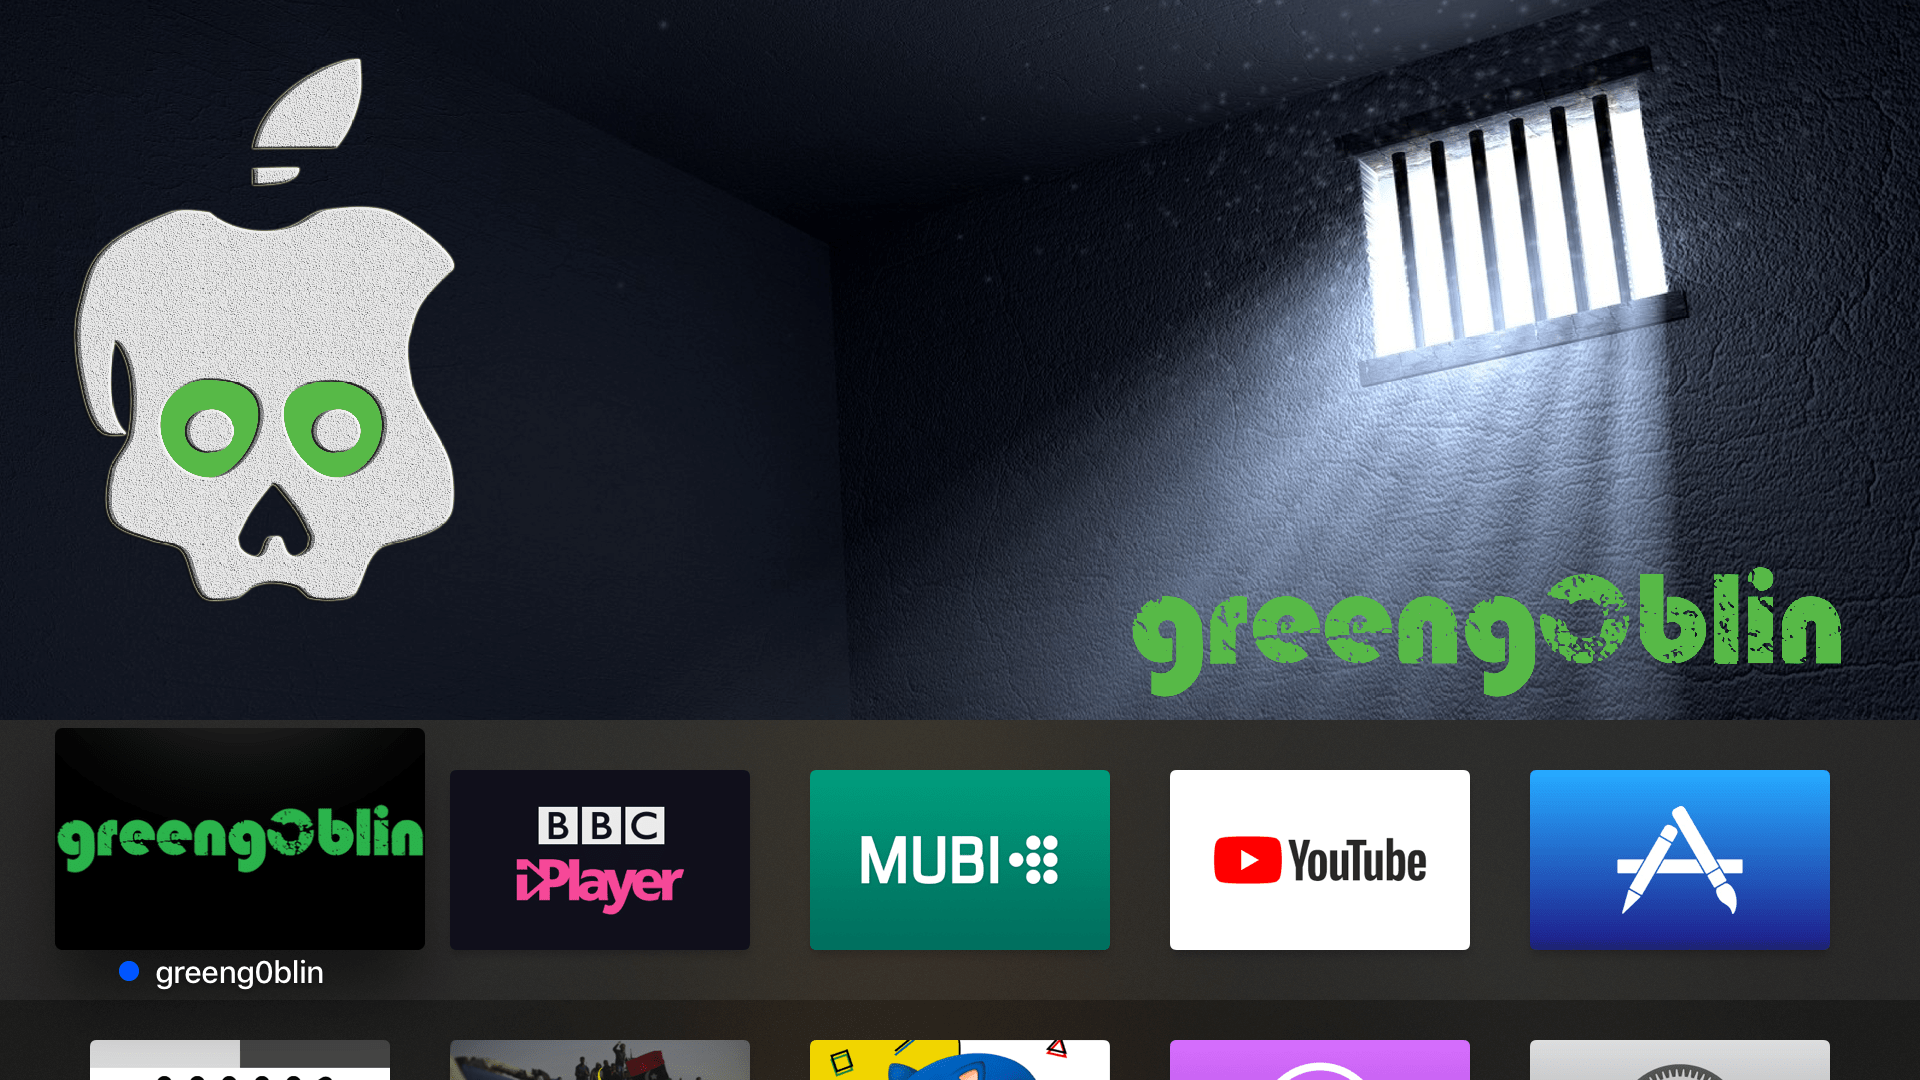 How to jailbreak greeng0blin for tvOS 10.2.2